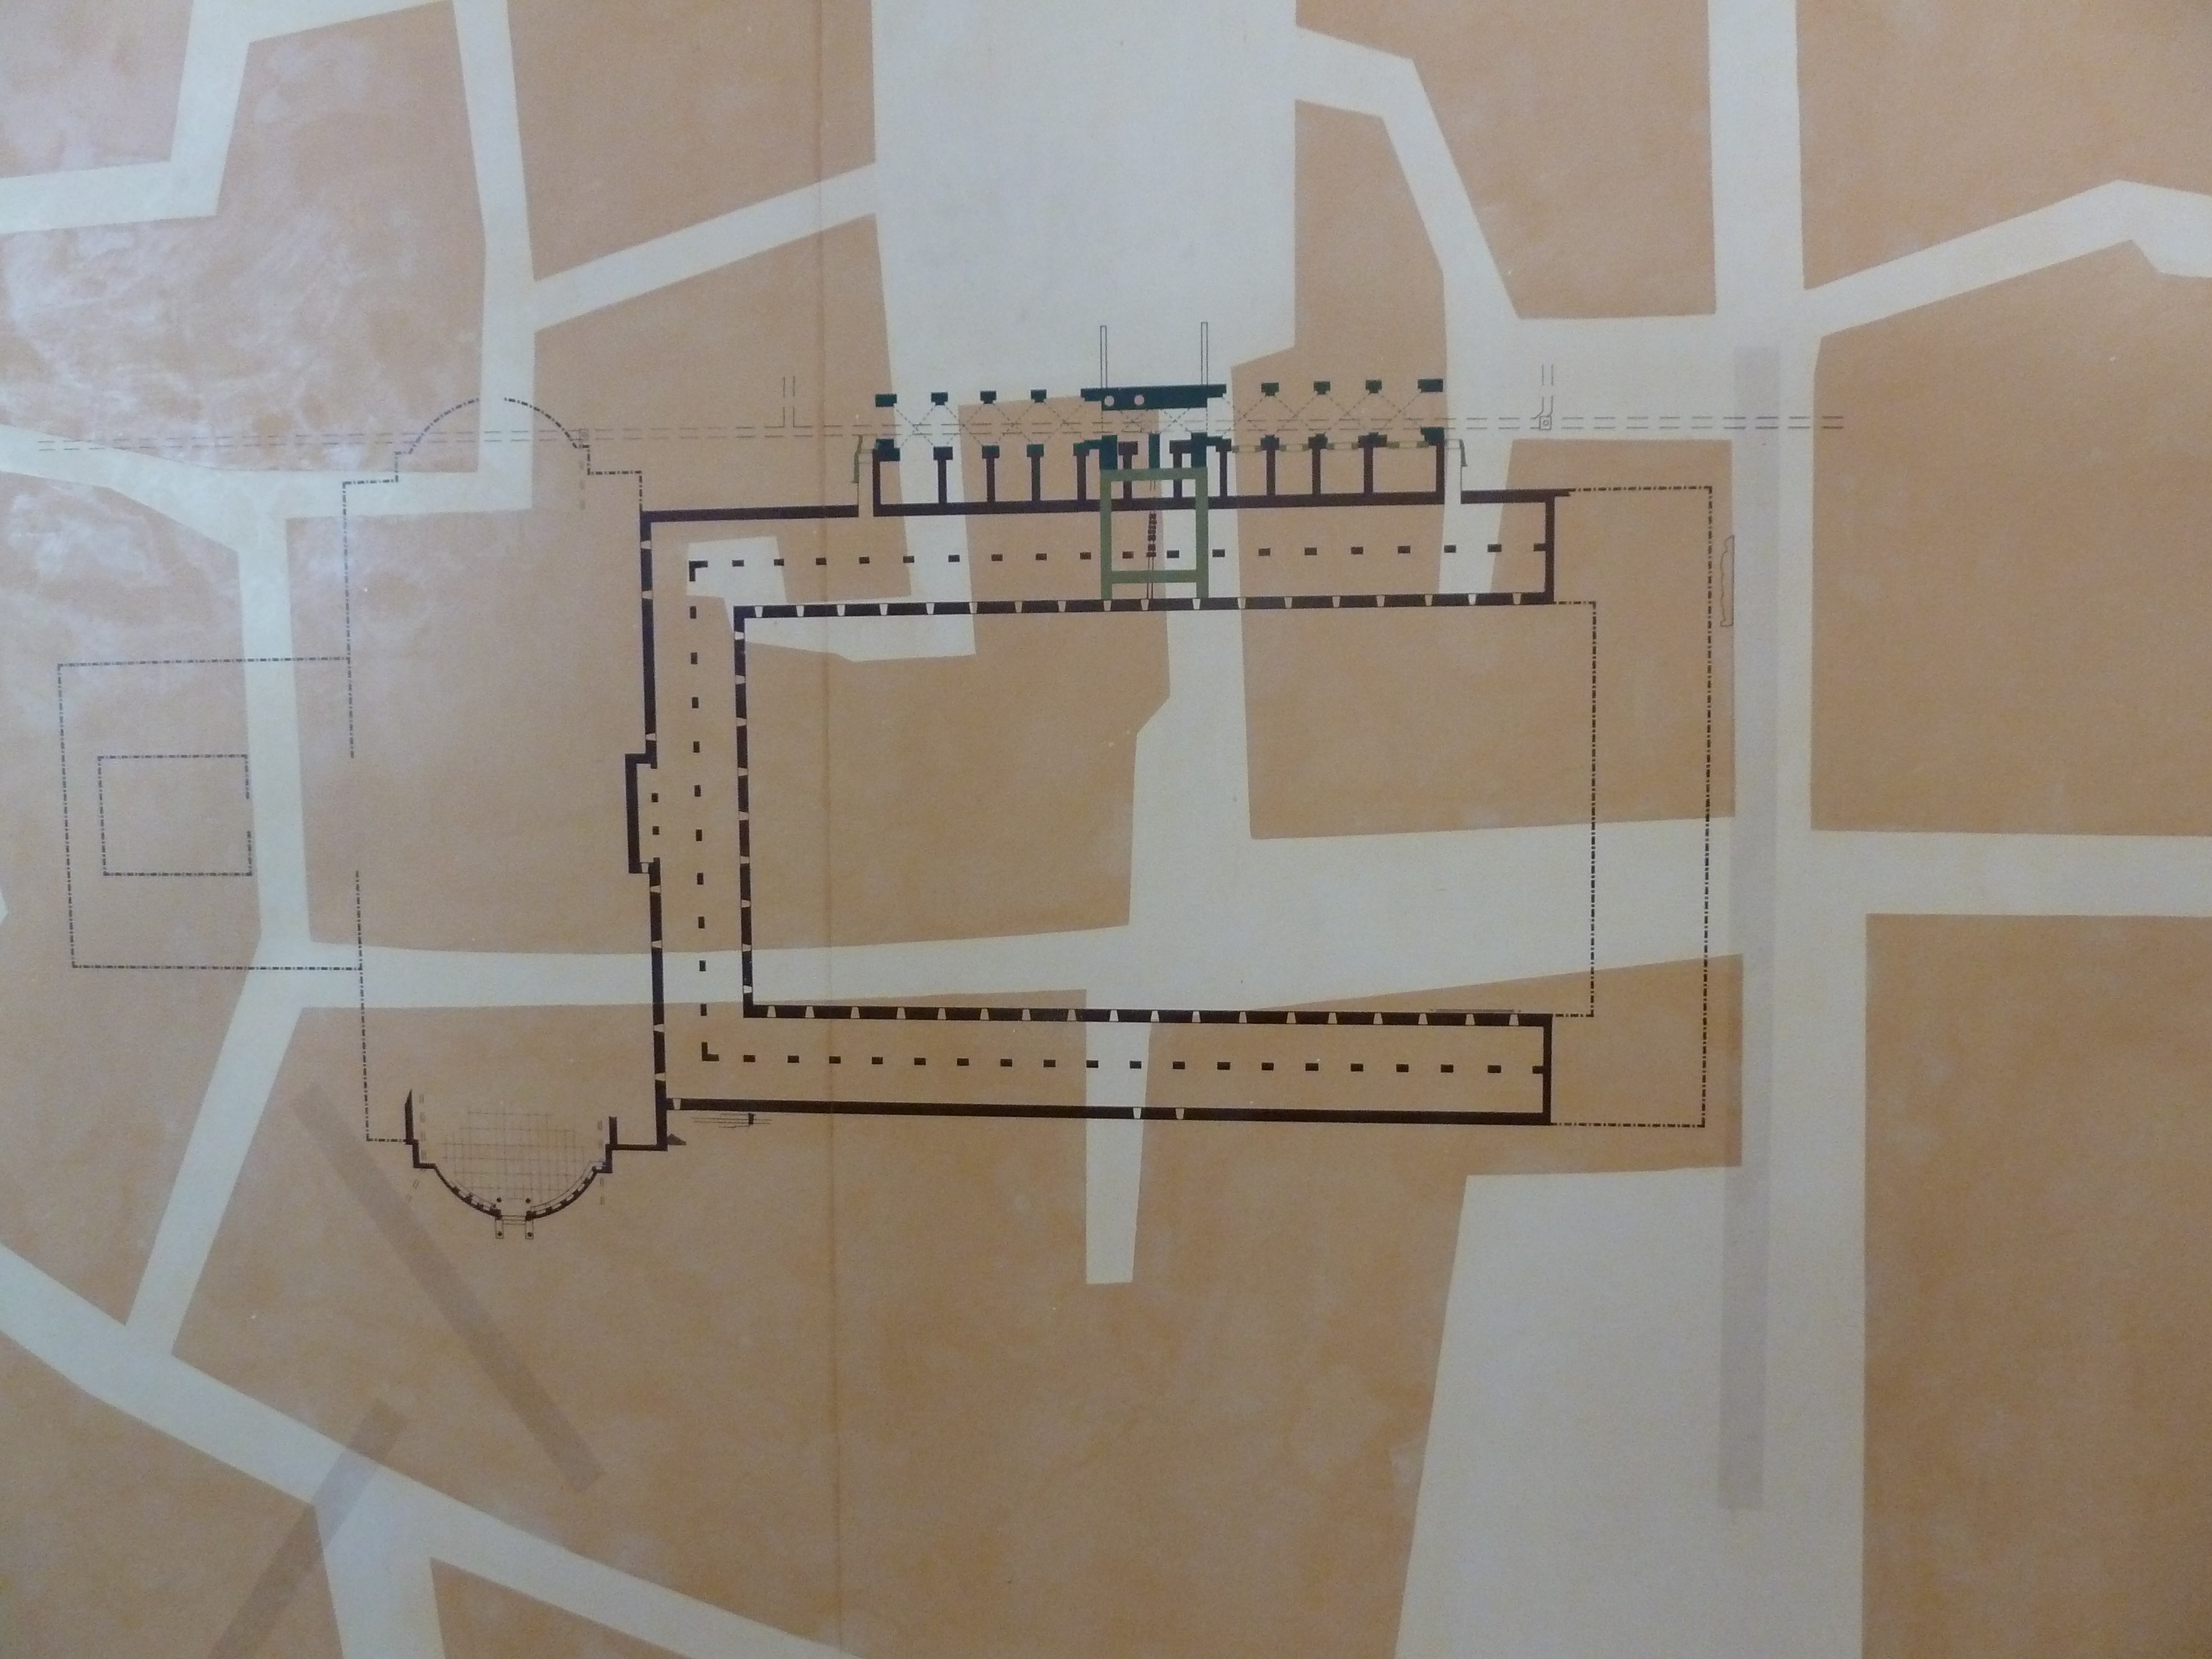 Plan du centre monumental de la Colonne